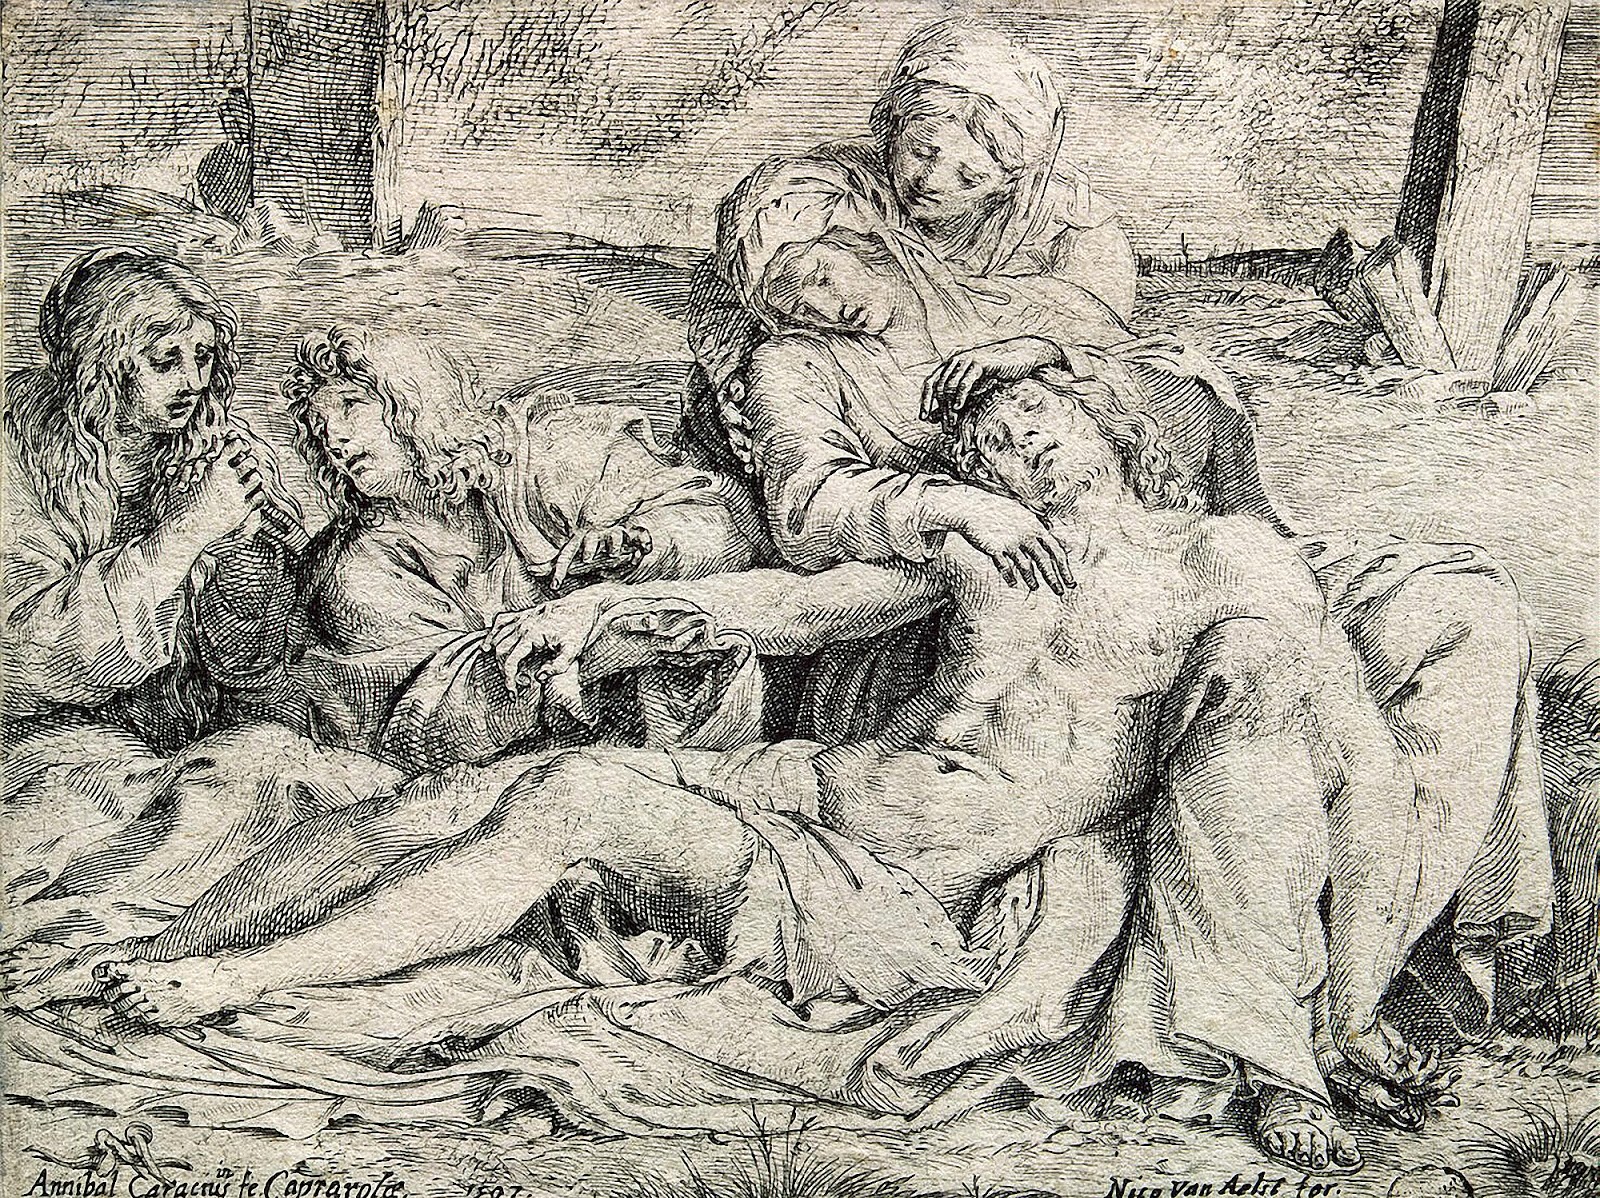 Annibale+Carracci-1560-1609 (33).jpg